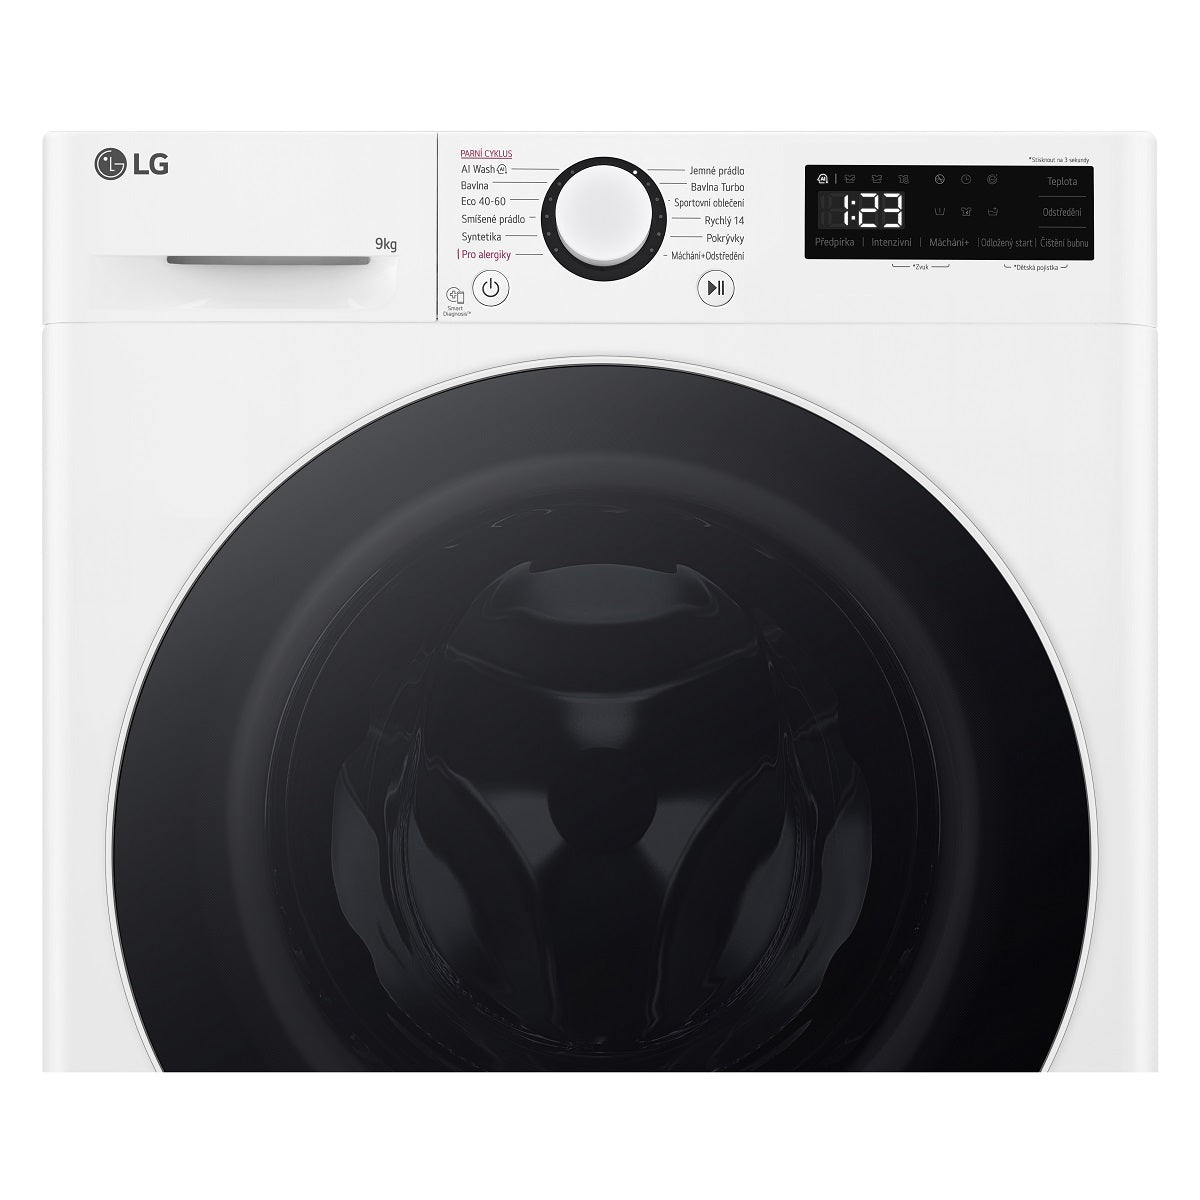 Pračka s předním plněním LG FLR5A92WW, A, 9kg